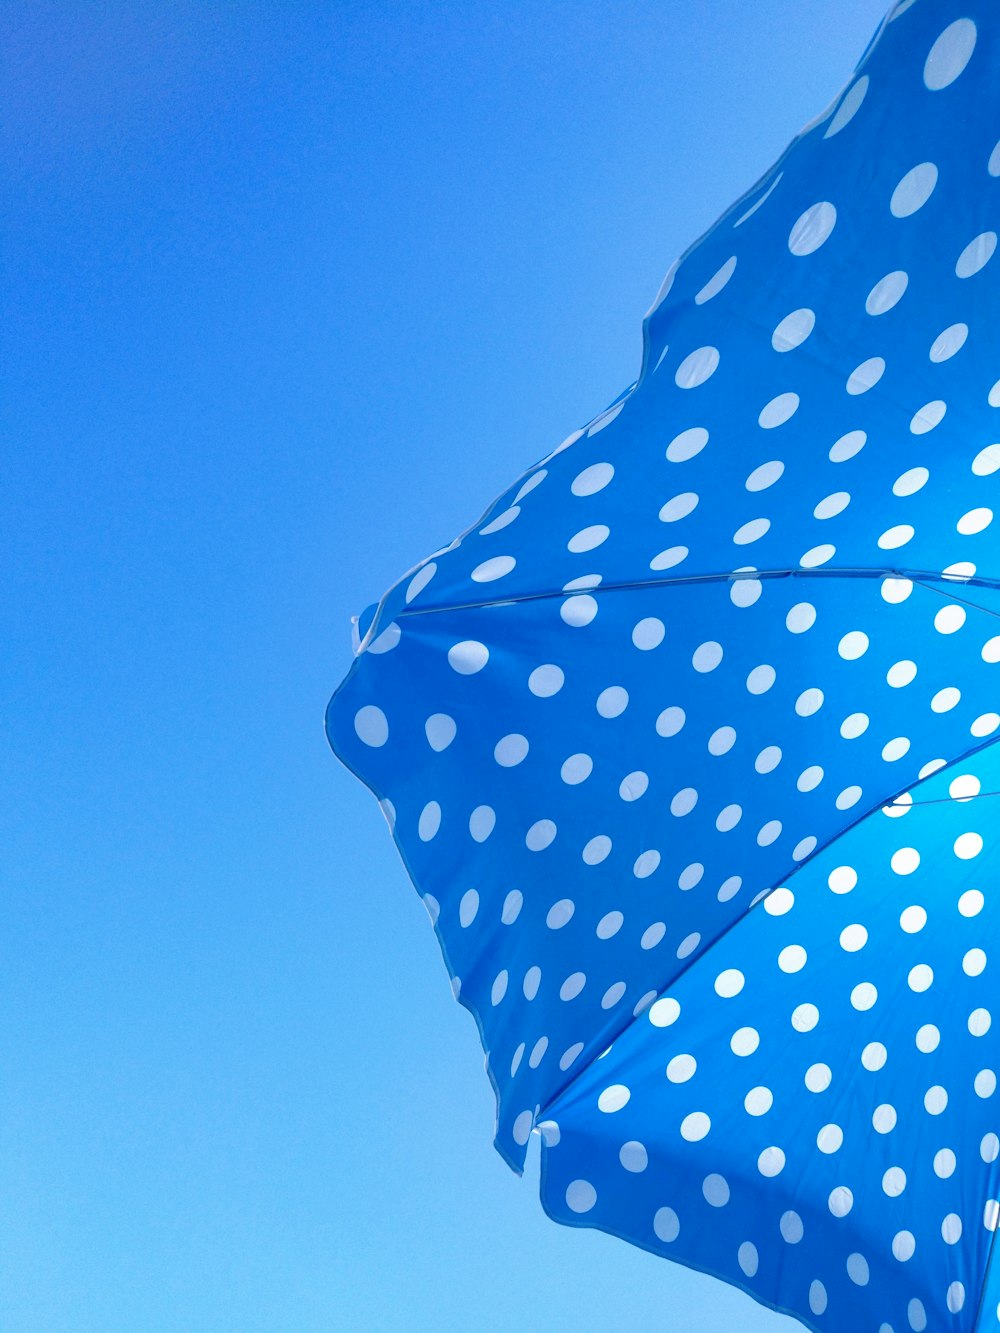 blue and white polka dot umbrella